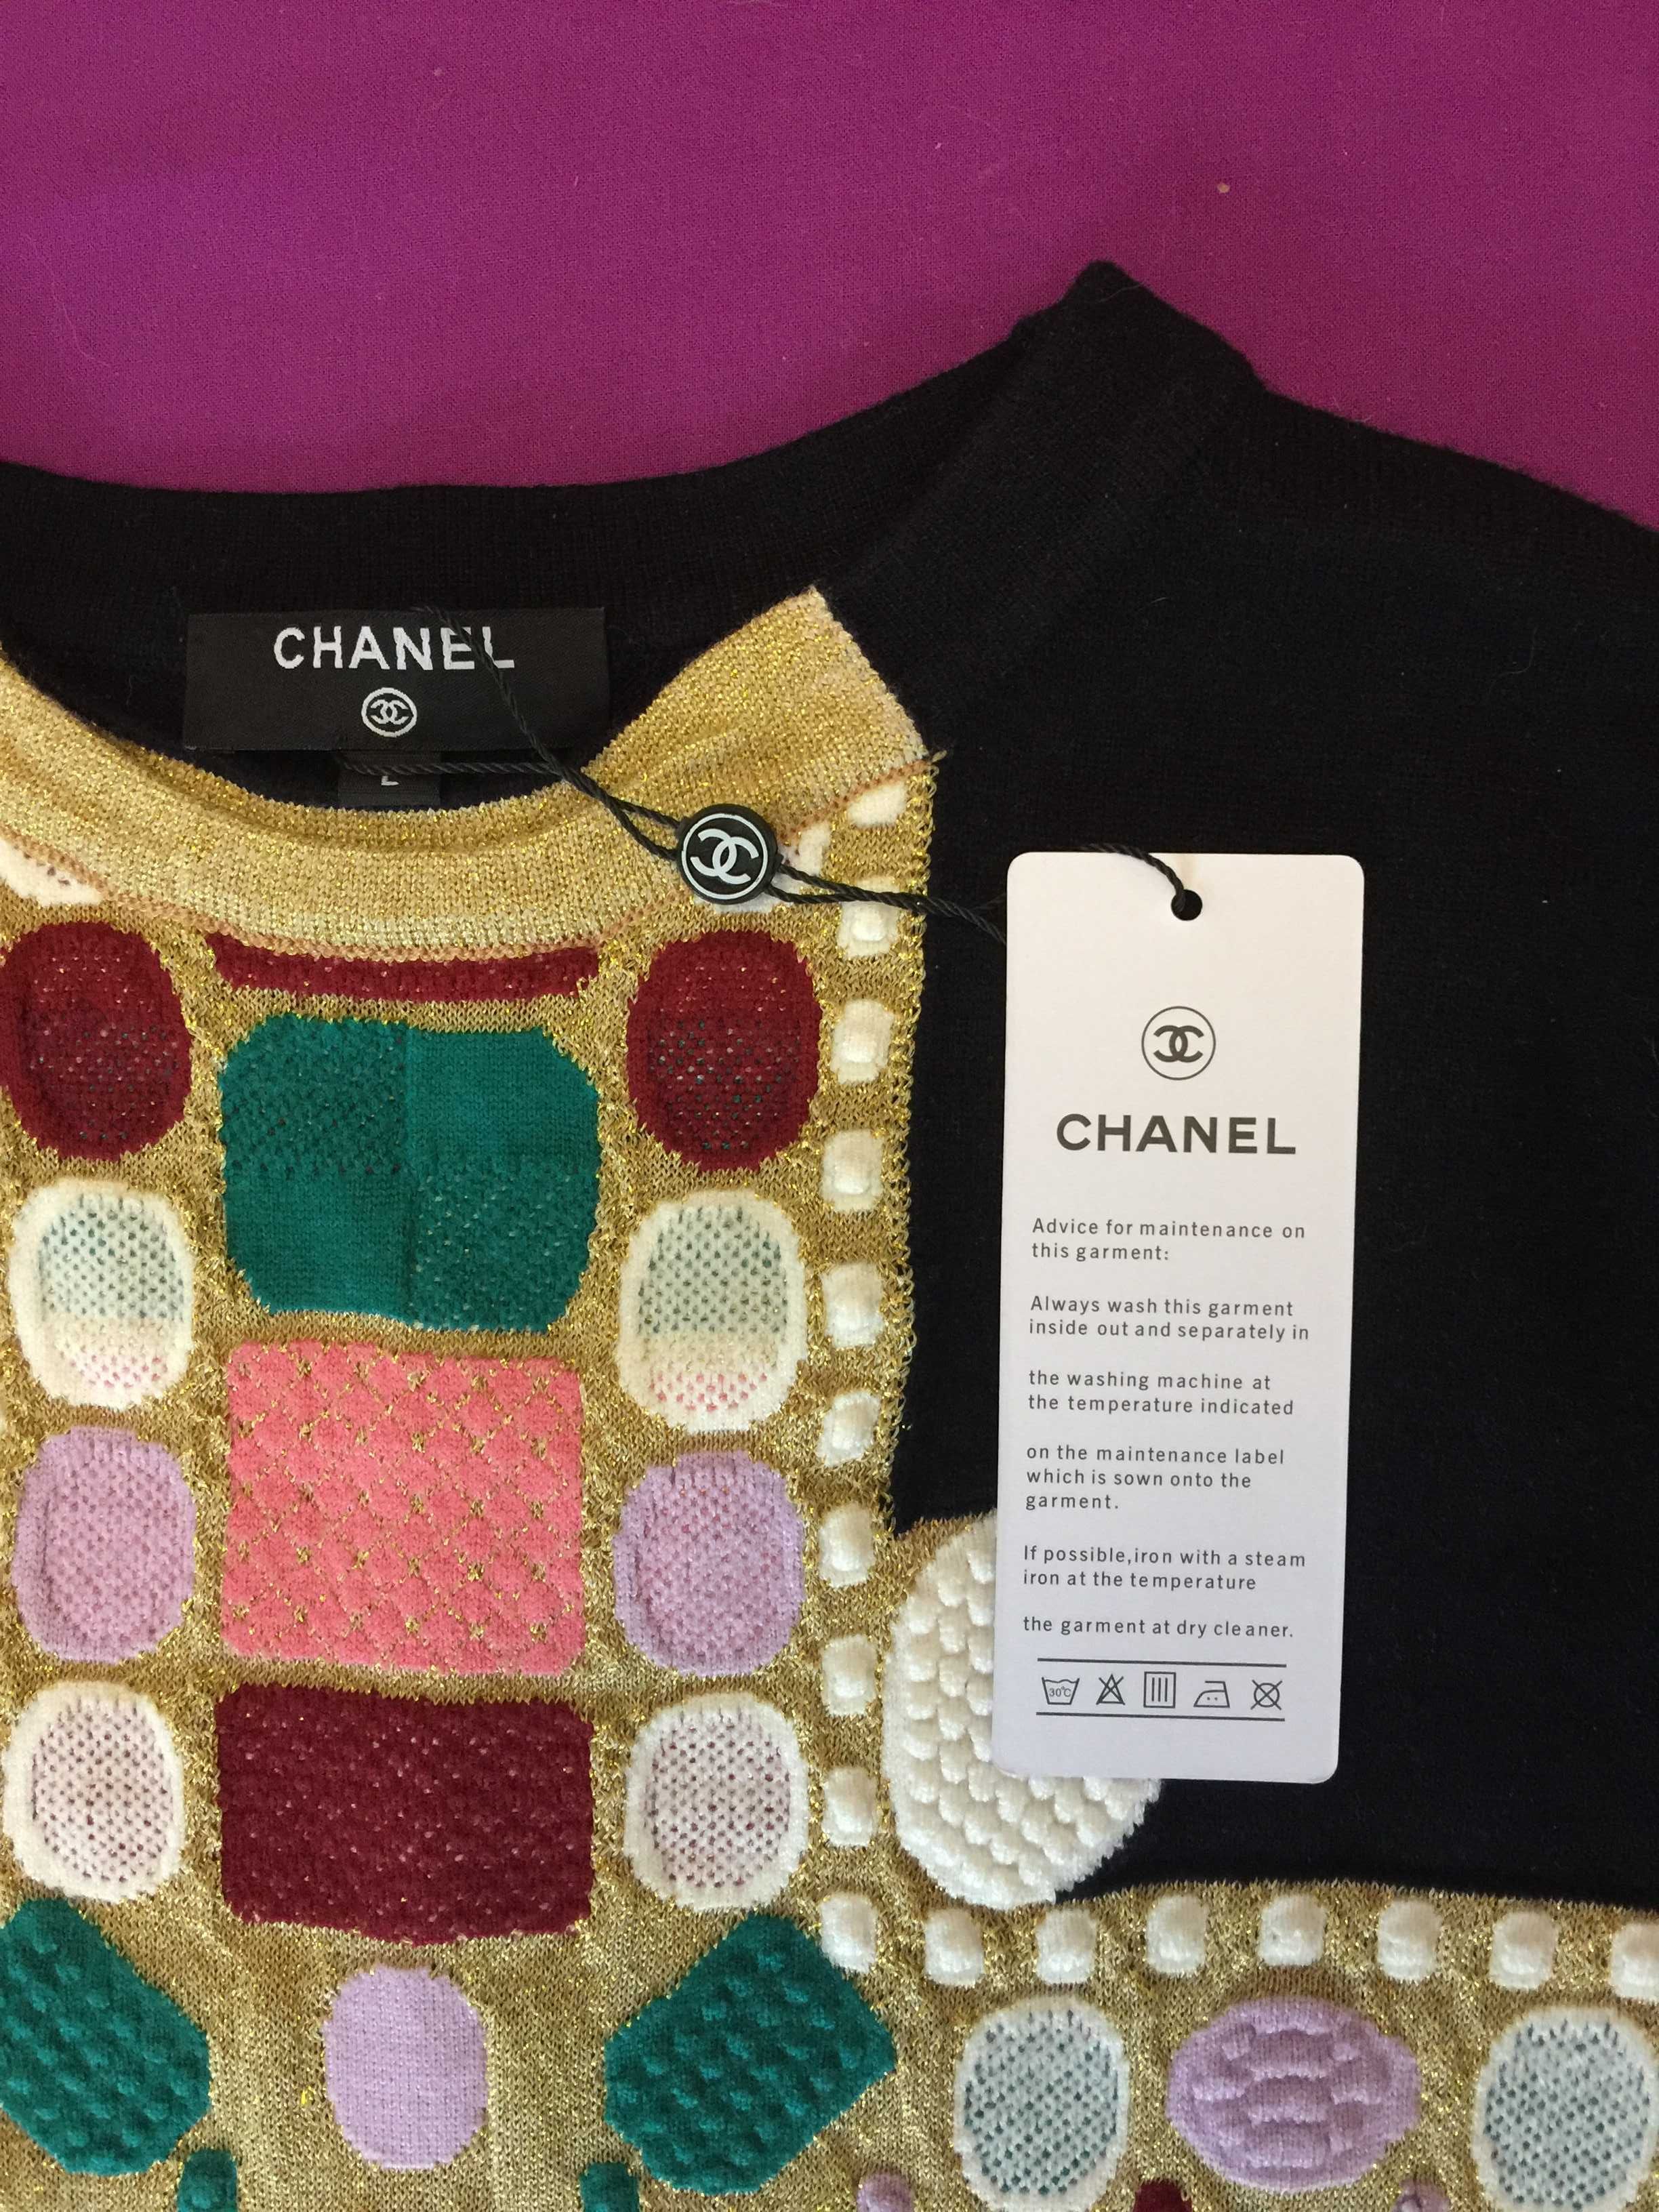 Chanel Эффектный Нарядный Свитер Пуловер Джемпер Кофта Шанель Новый